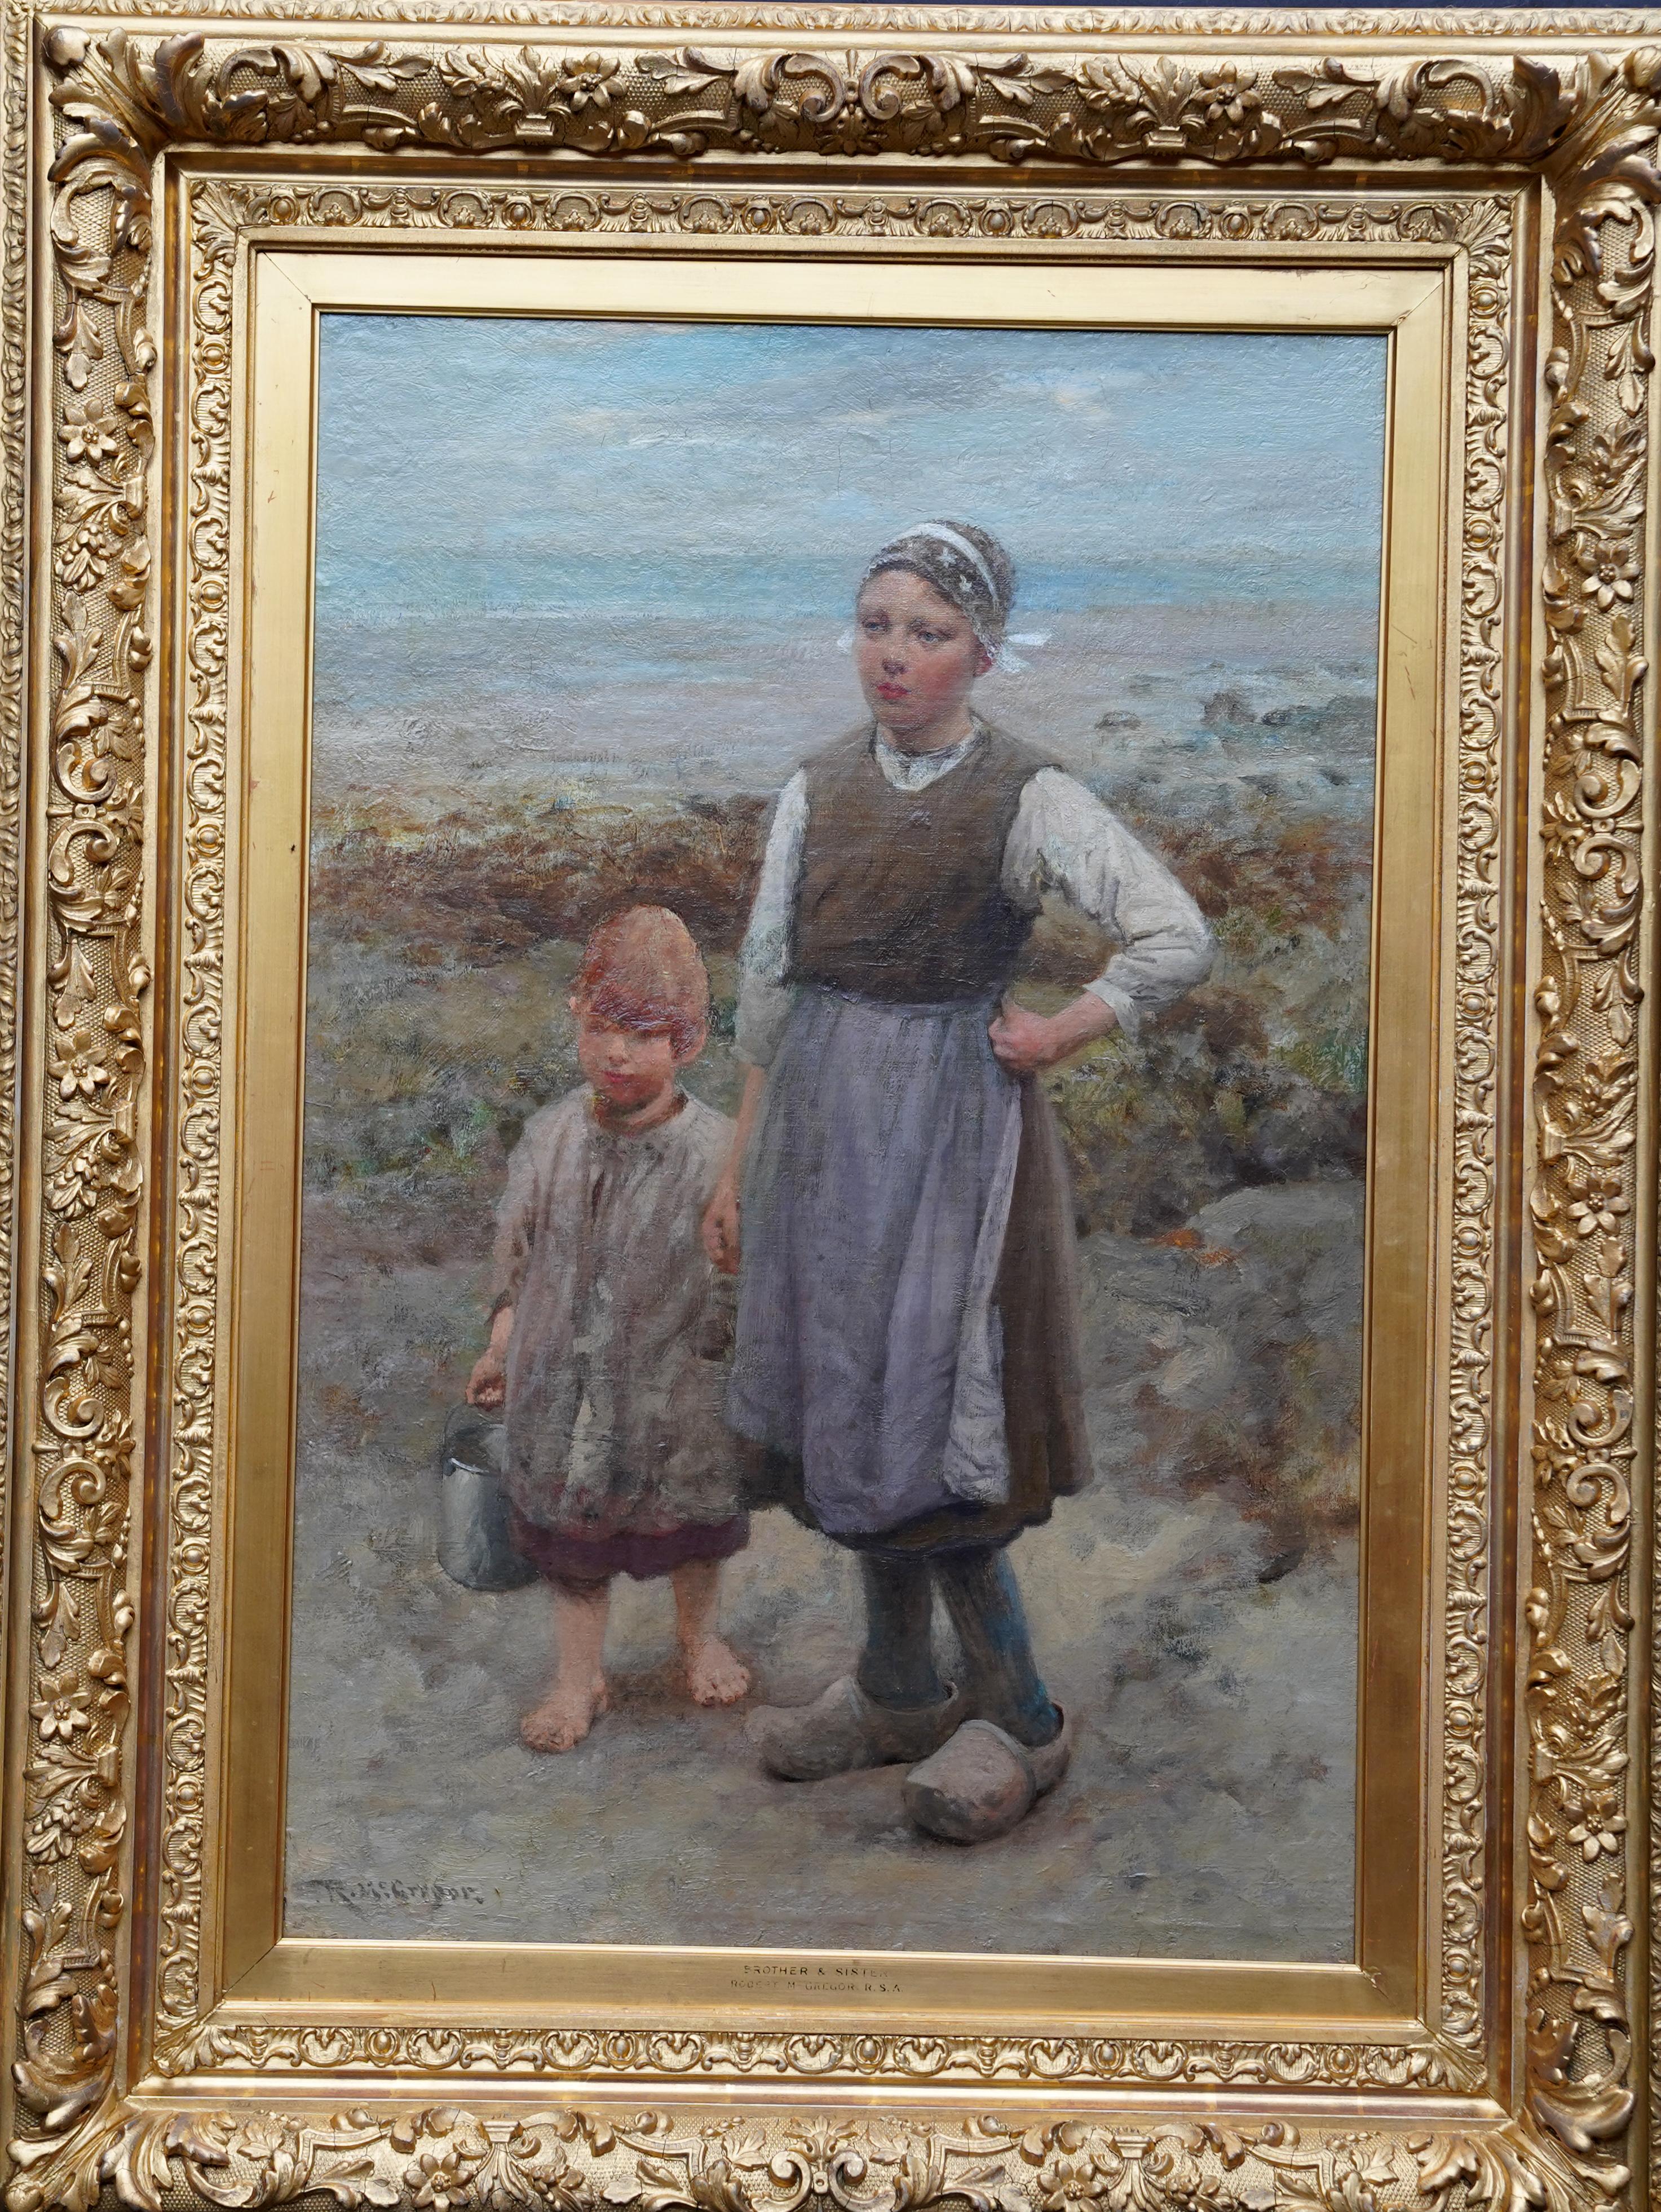 Brother and Sister - Exposition d'art écossaise 1918 - peinture à l'huile de portrait à l'huile de paysage